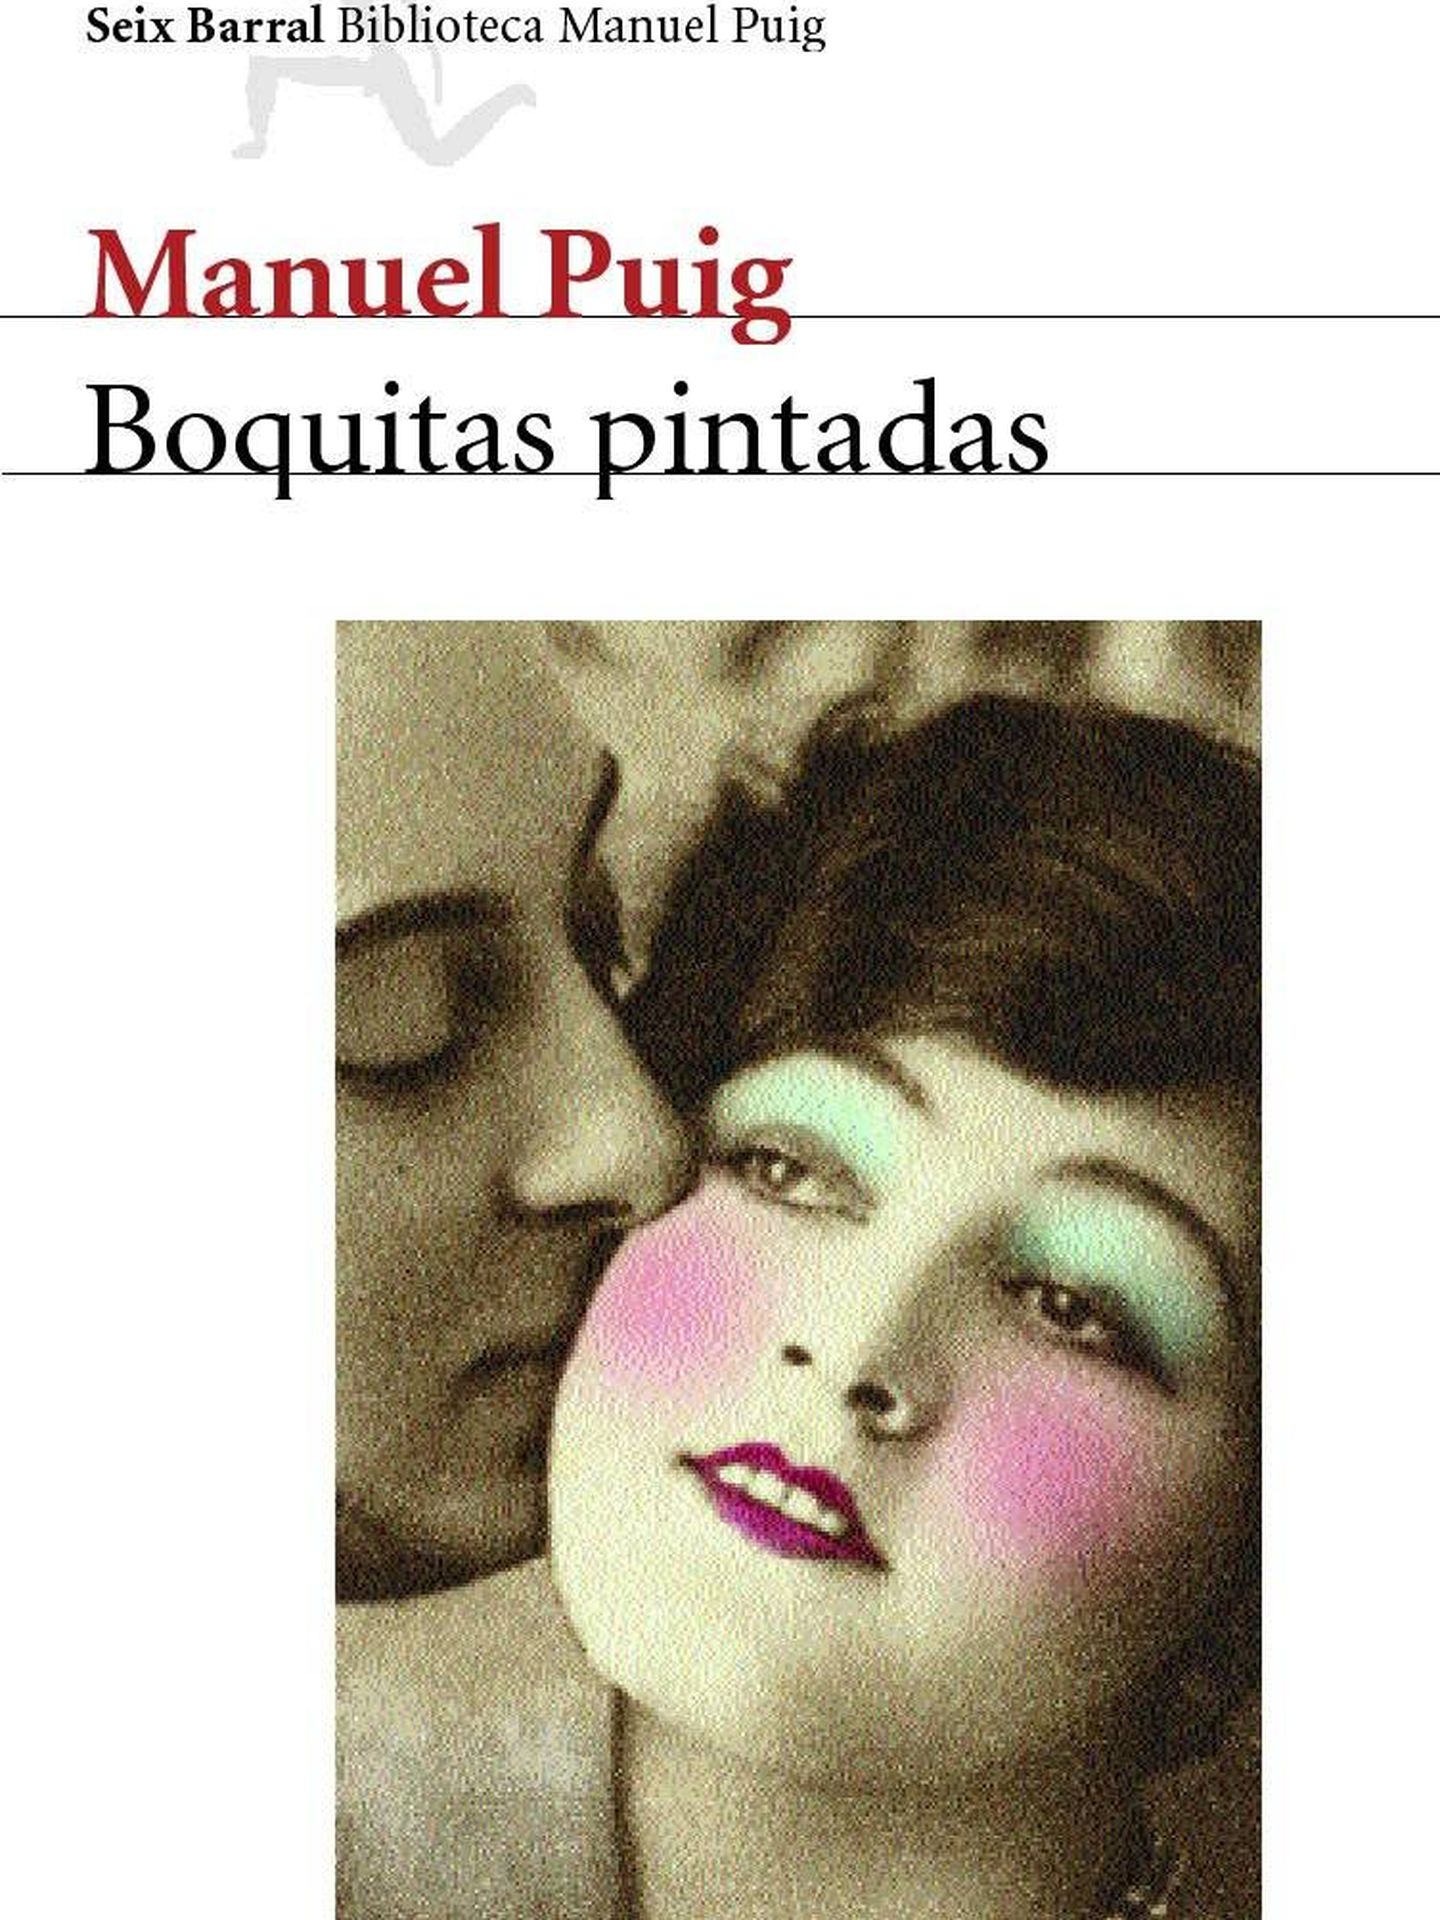 Manuel Puig - 'Boquitas pintadas'